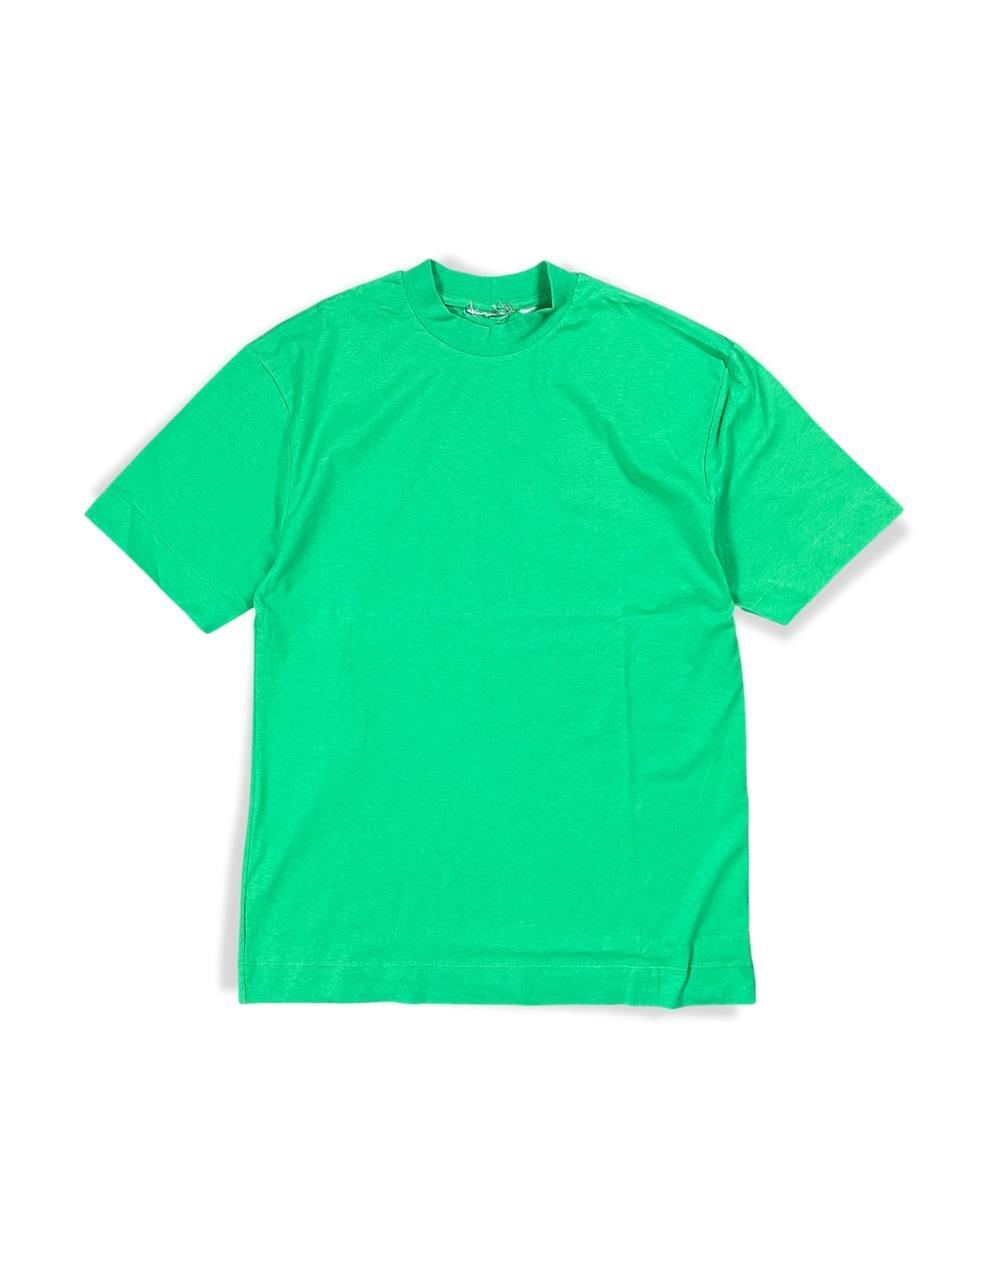 Men's Oversize Basic Green T-Shirt